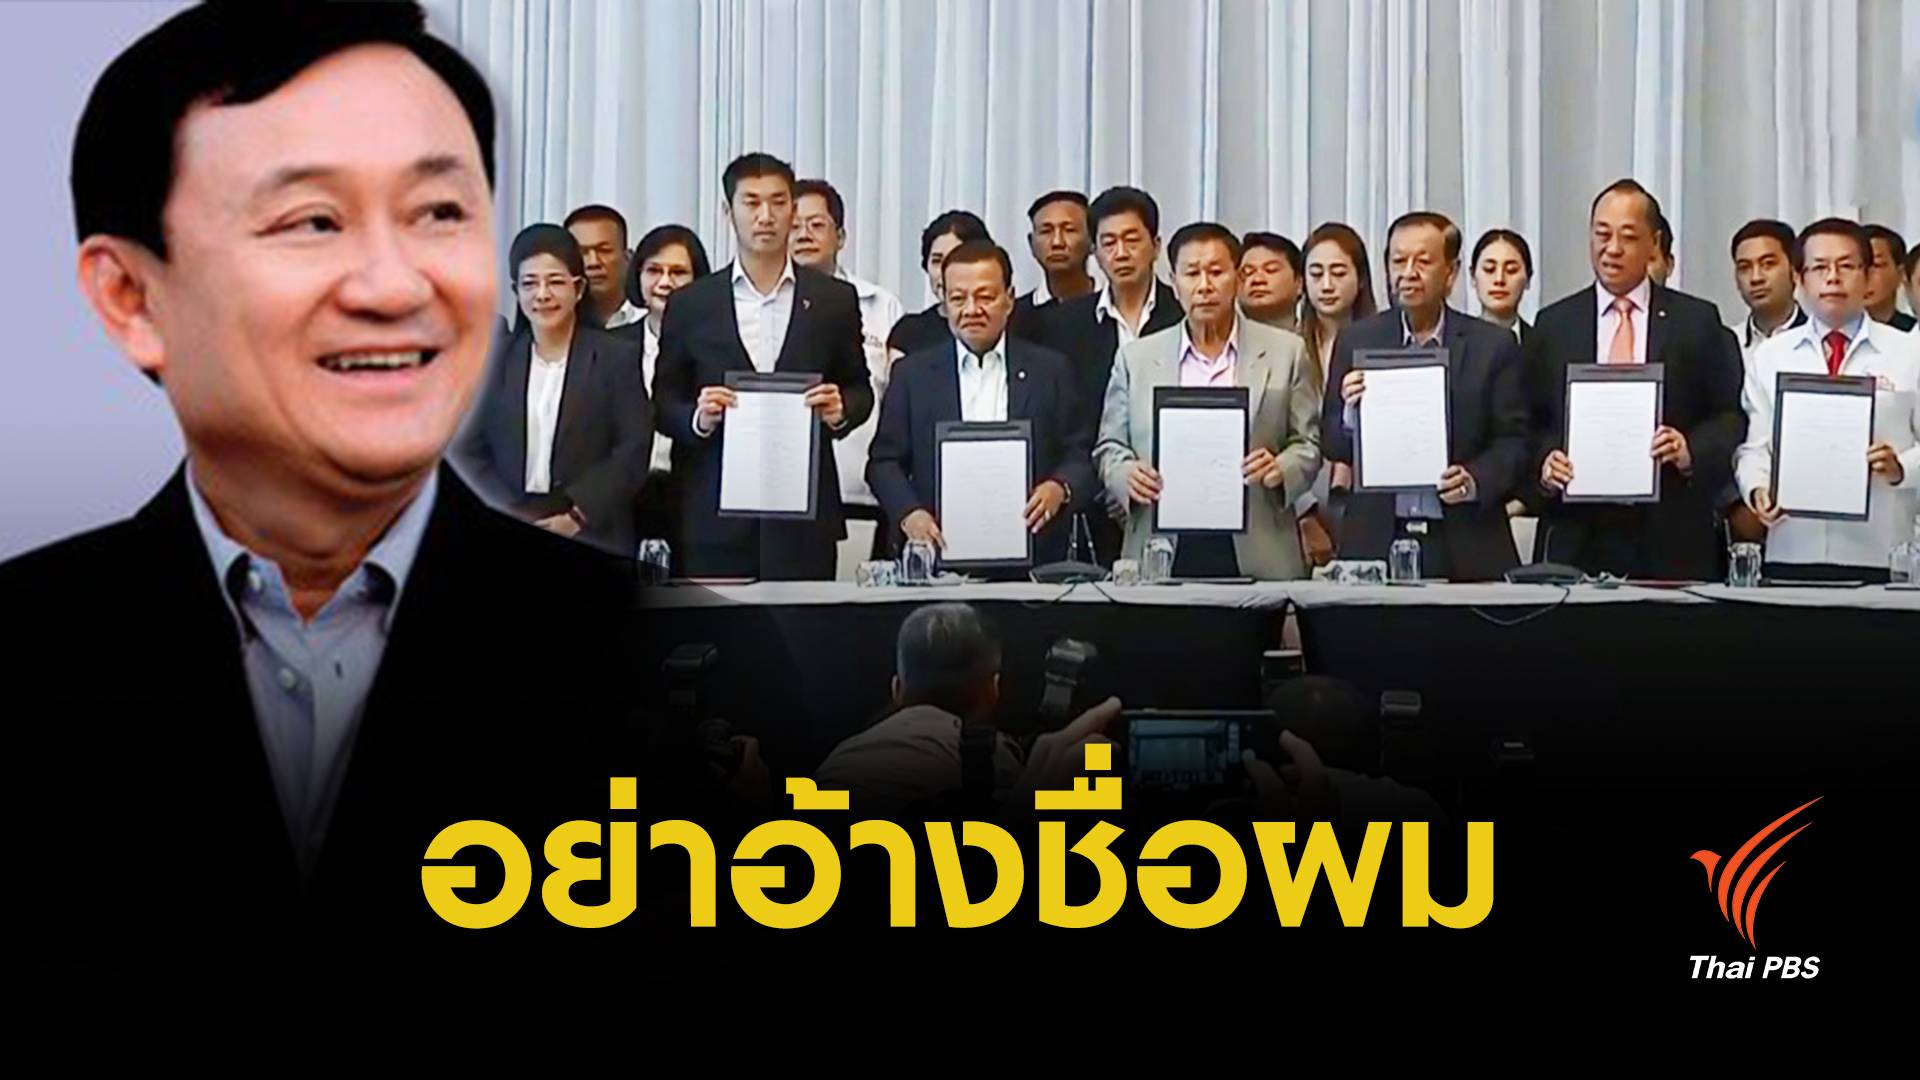 “ทักษิณ” ขอเป็นกองเชียร์ให้ไทยกลับสู่ประชาธิปไตย ขออย่าอ้างชื่อเป็นเงื่อนไขทางการเมือง